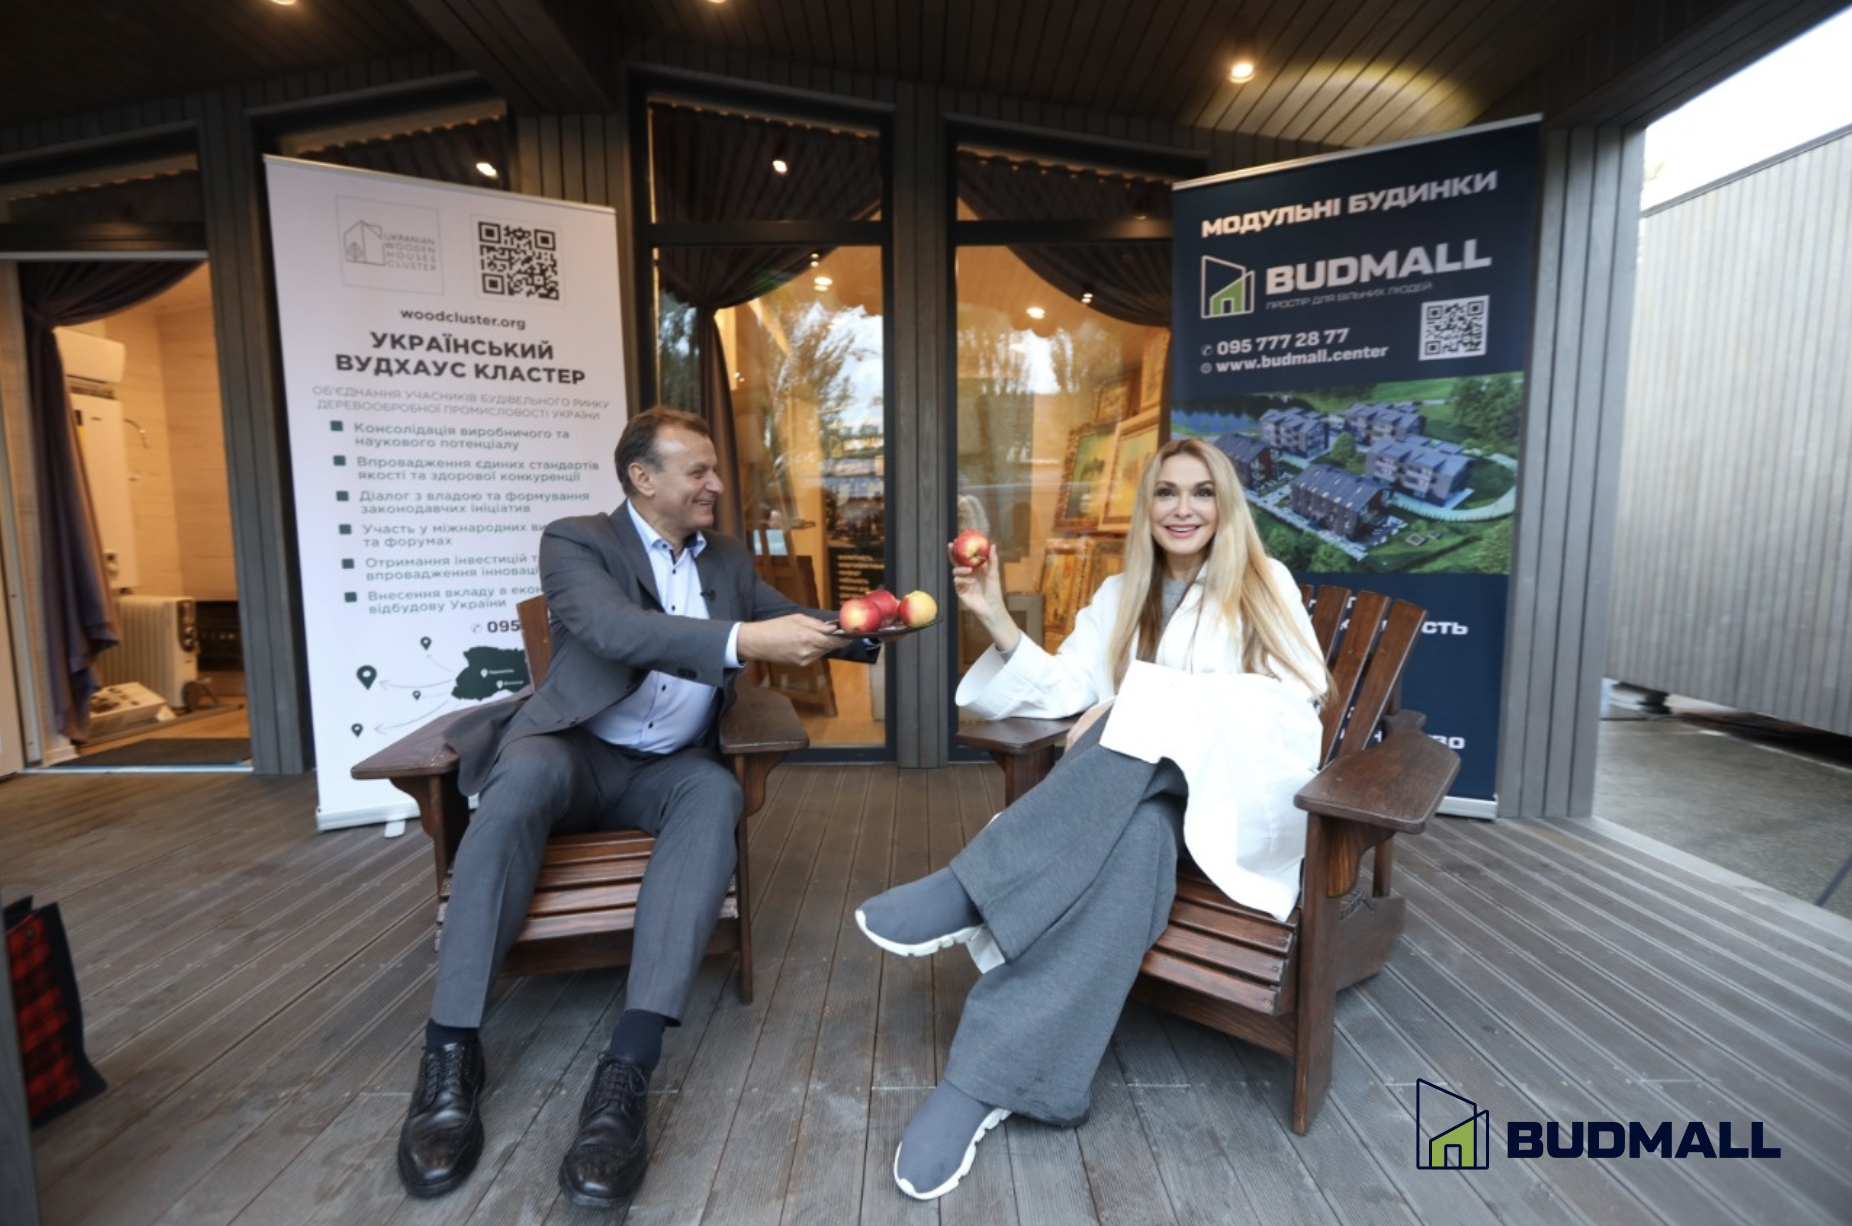 Відкриття Budmall Center у Києві: презентація рішень швидкого будівництва — фото